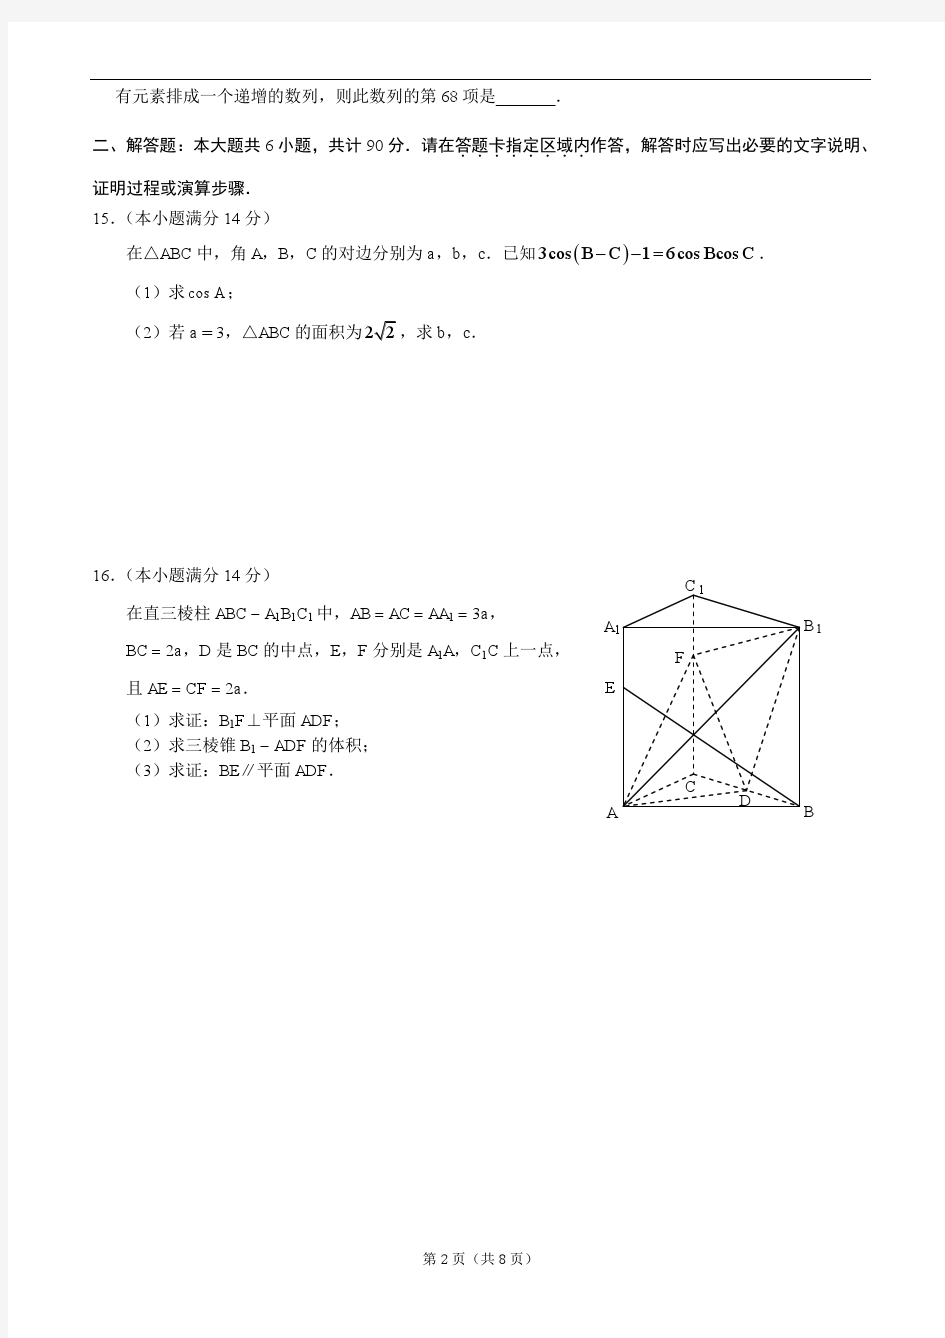 江苏省苏州大学2013届高三高考考前指导卷(1)(数学)